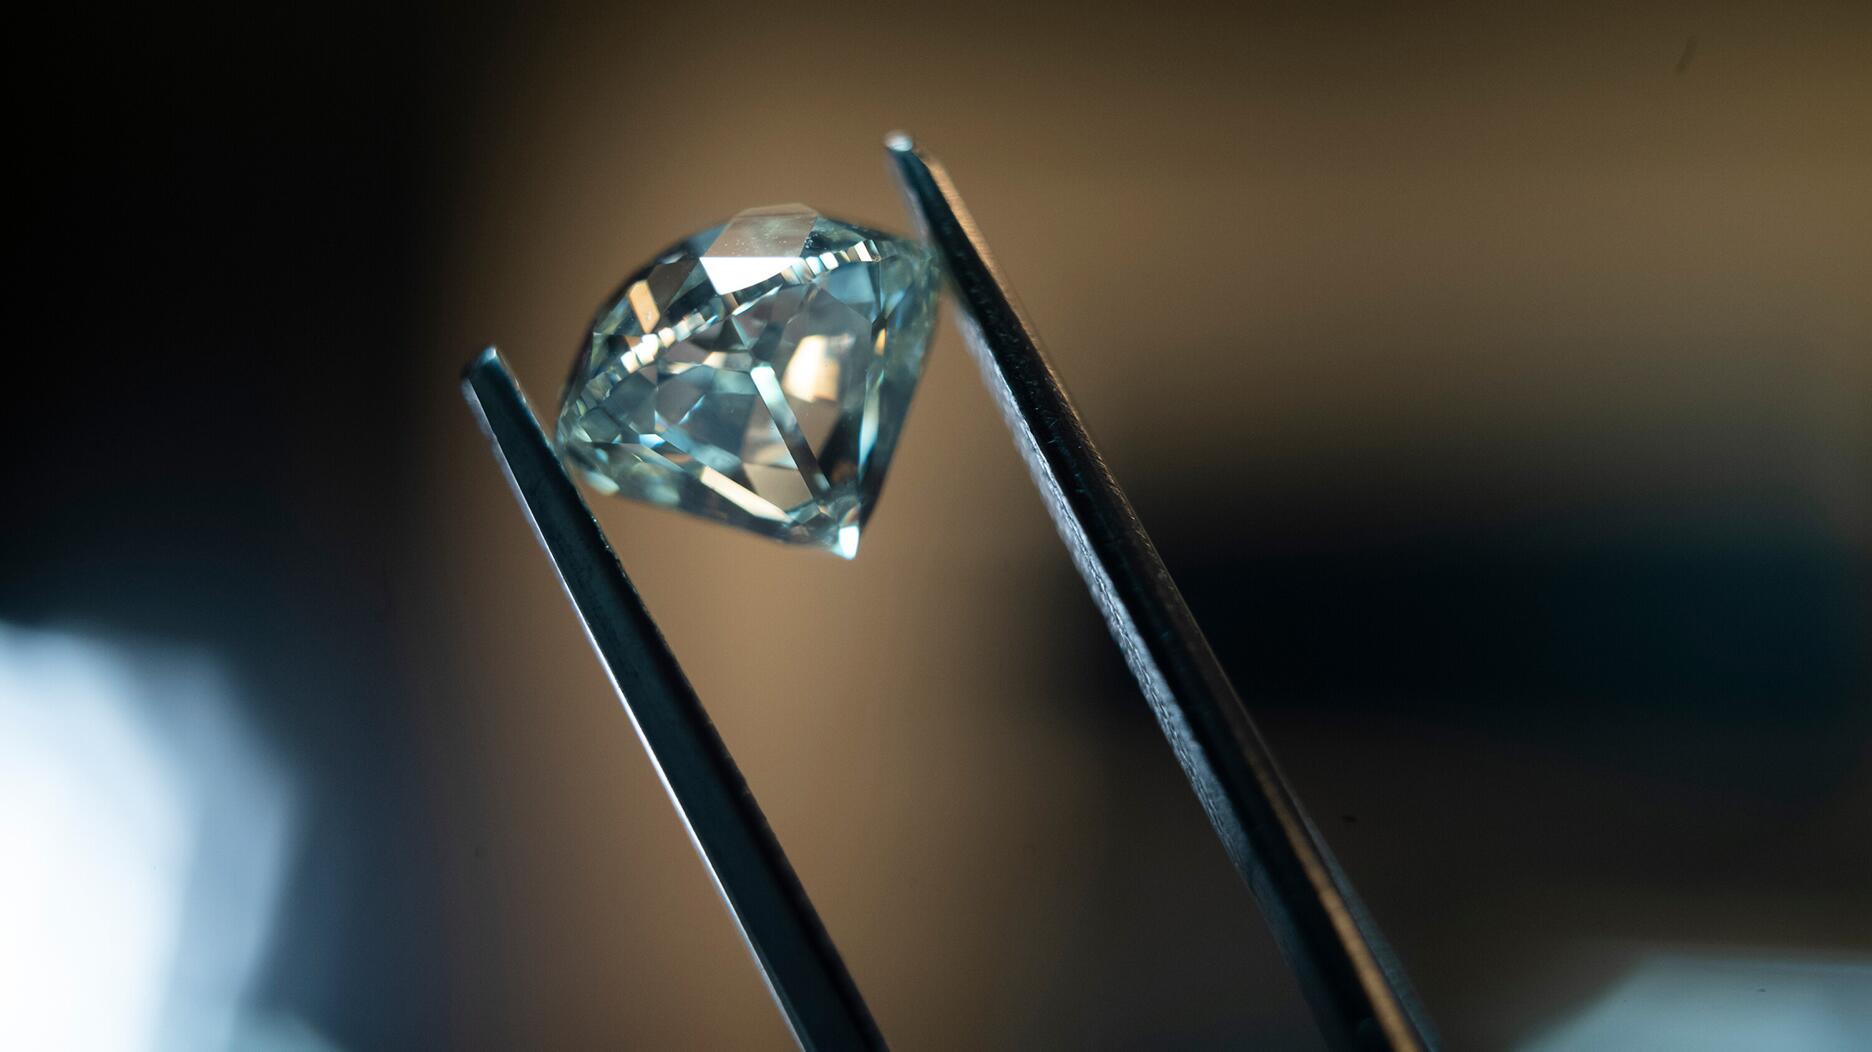 De Beers polished diamond in tweezers 